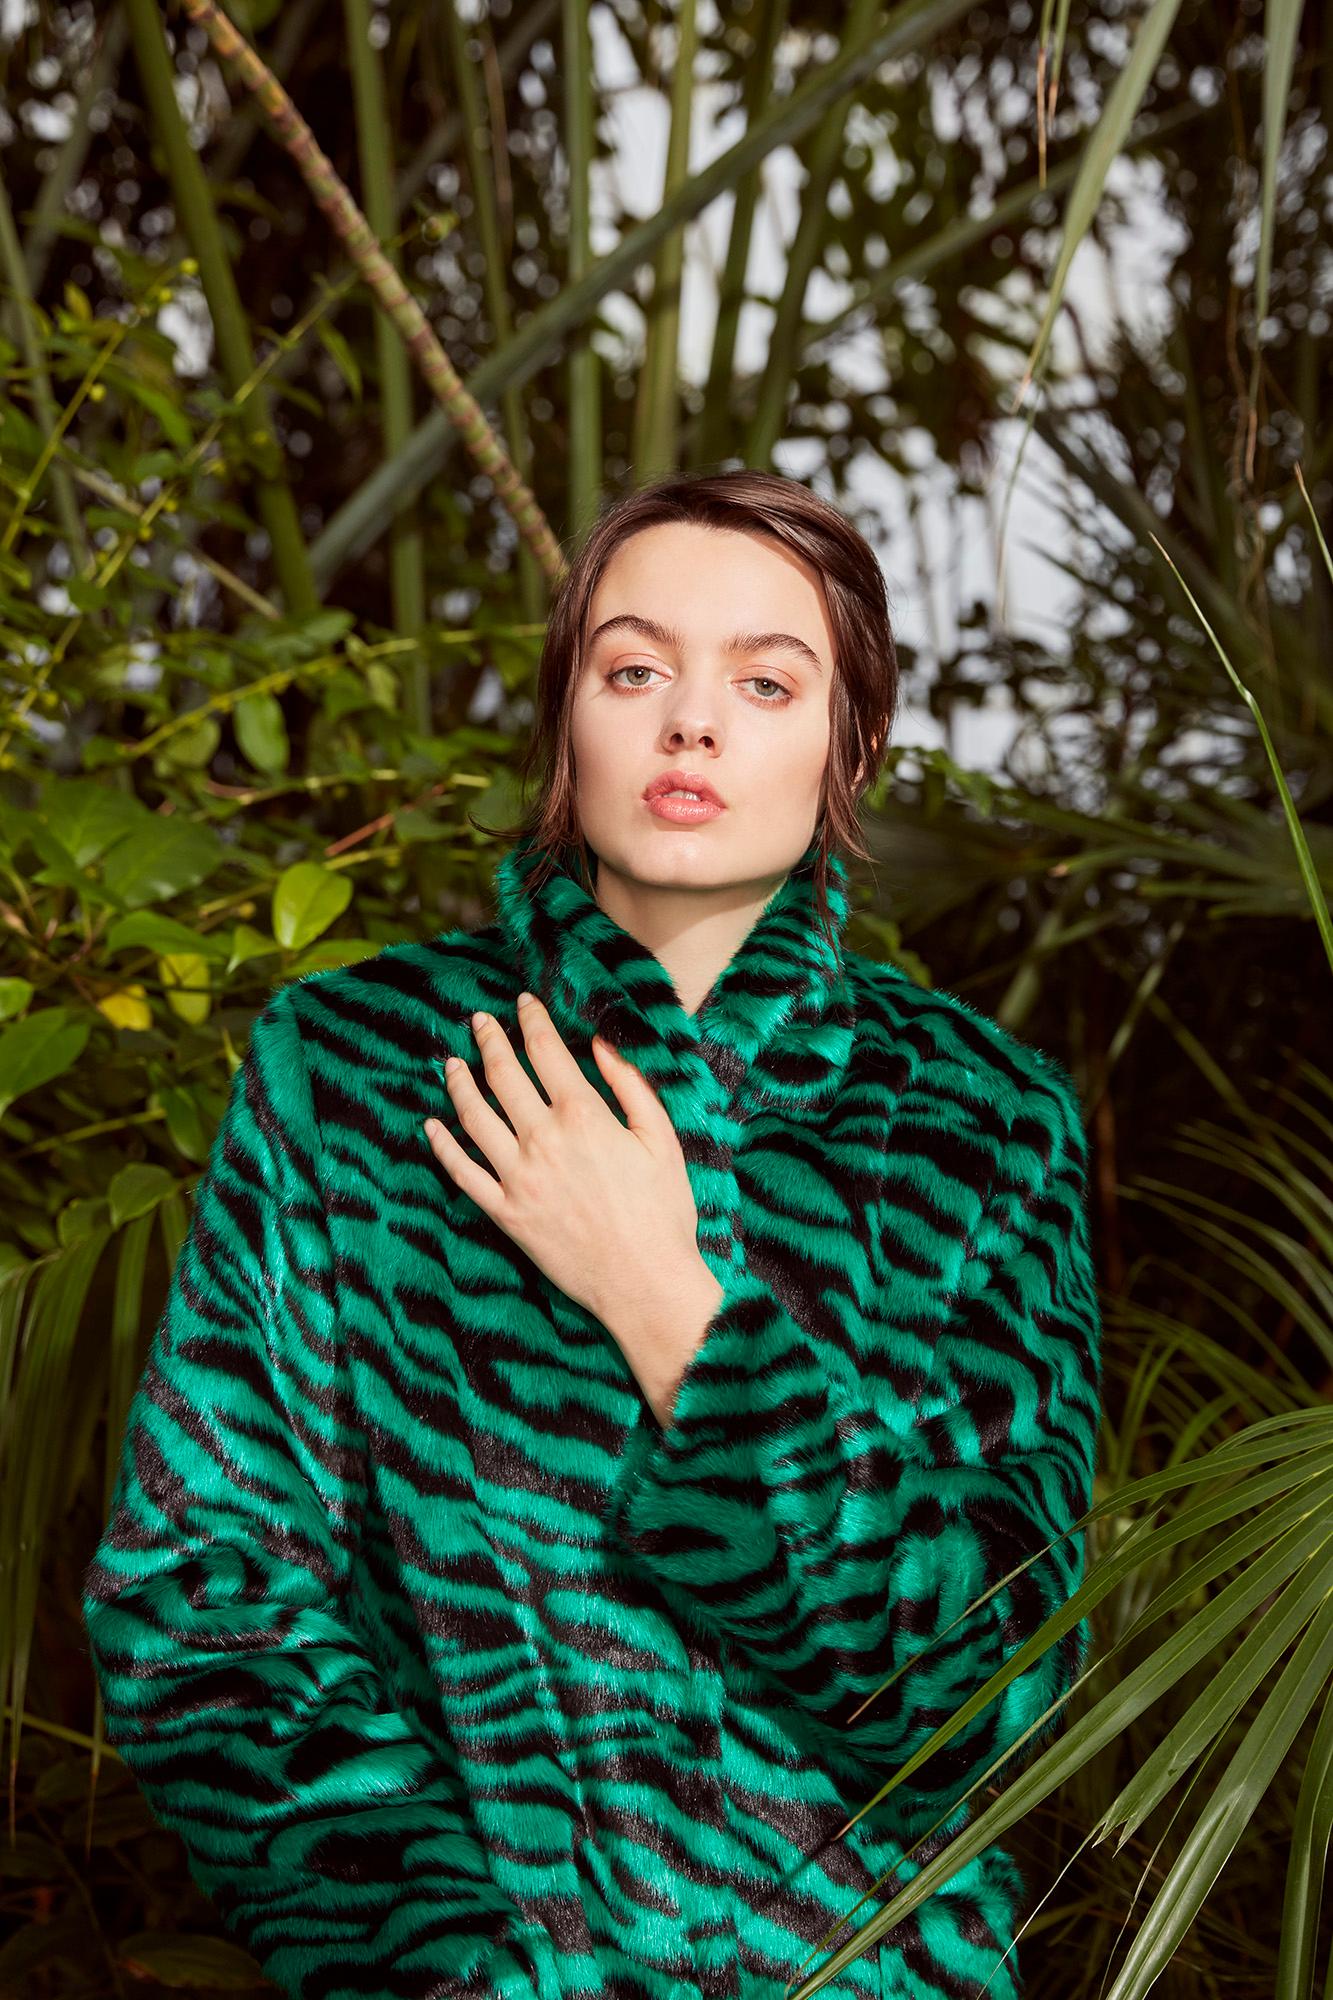 Verheyen London Esmeralda Faux Fur Coat in Emerald Green Zebra Print size uk 14 For Sale 5